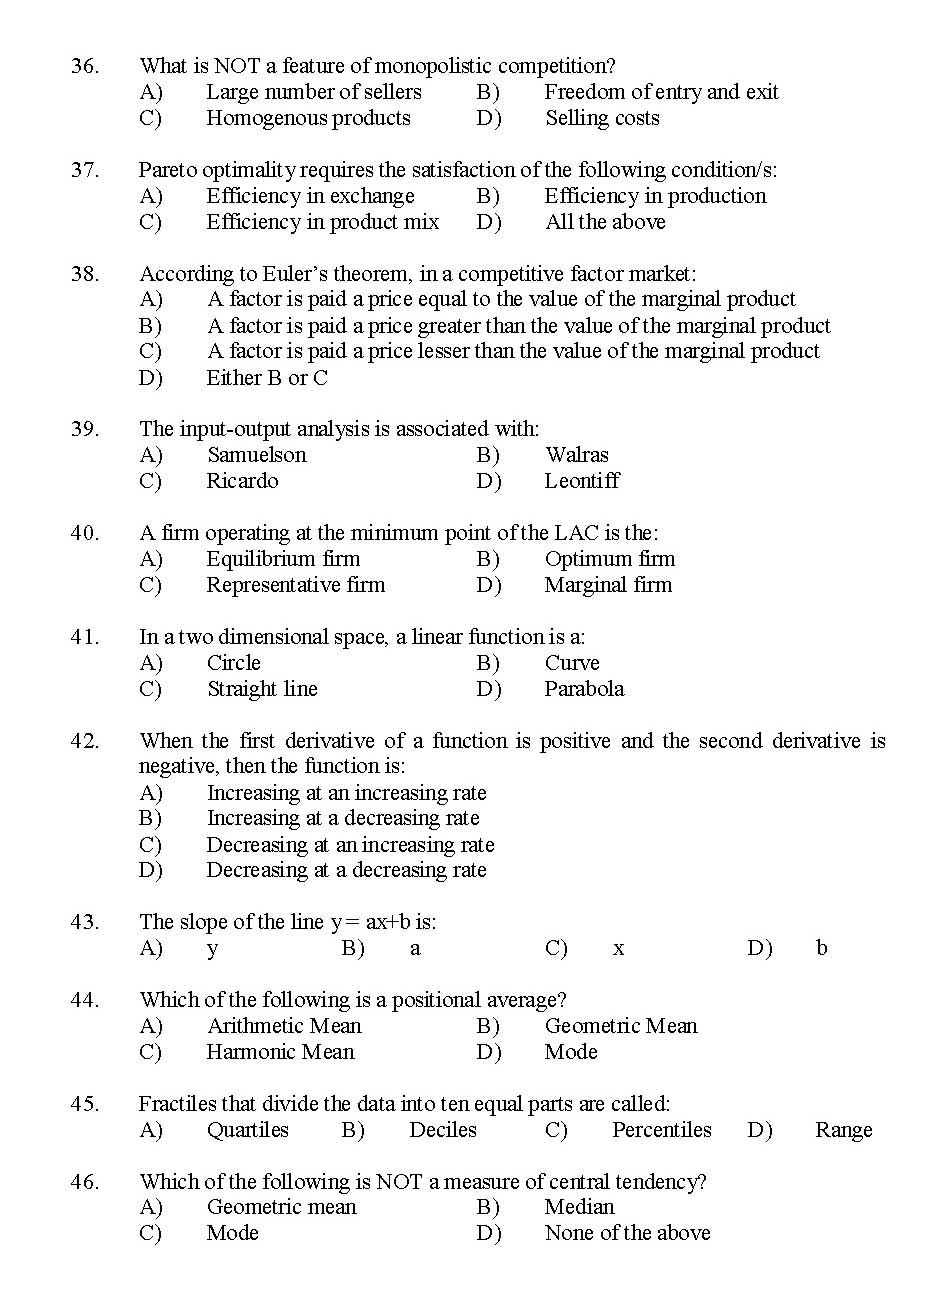 Kerala SET Economics Exam 2016 Question Code 16106 A 5